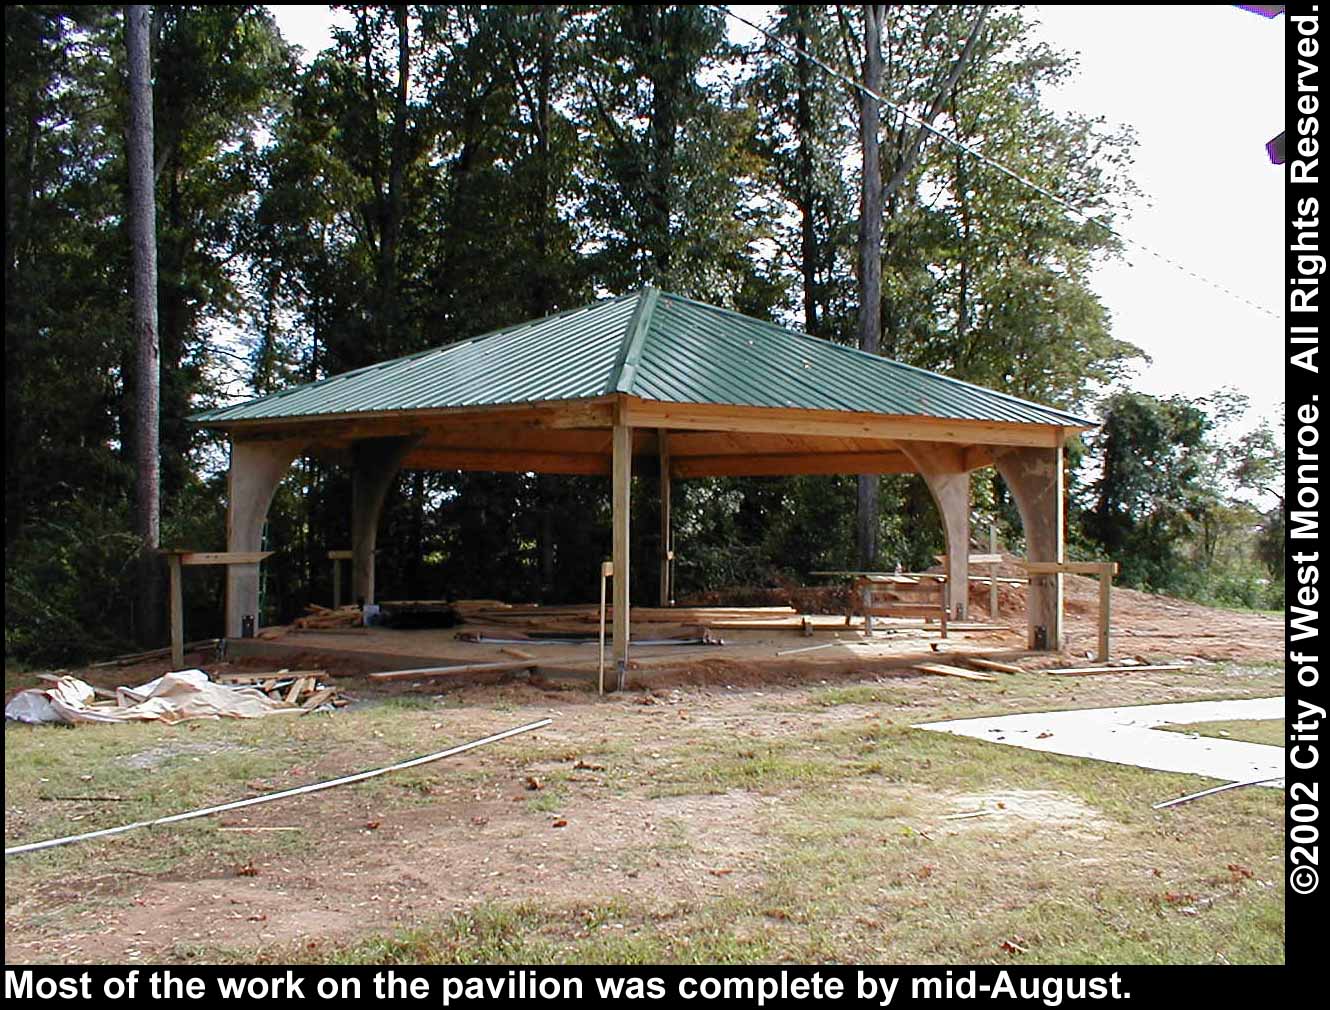 Photo: Pavilion construction